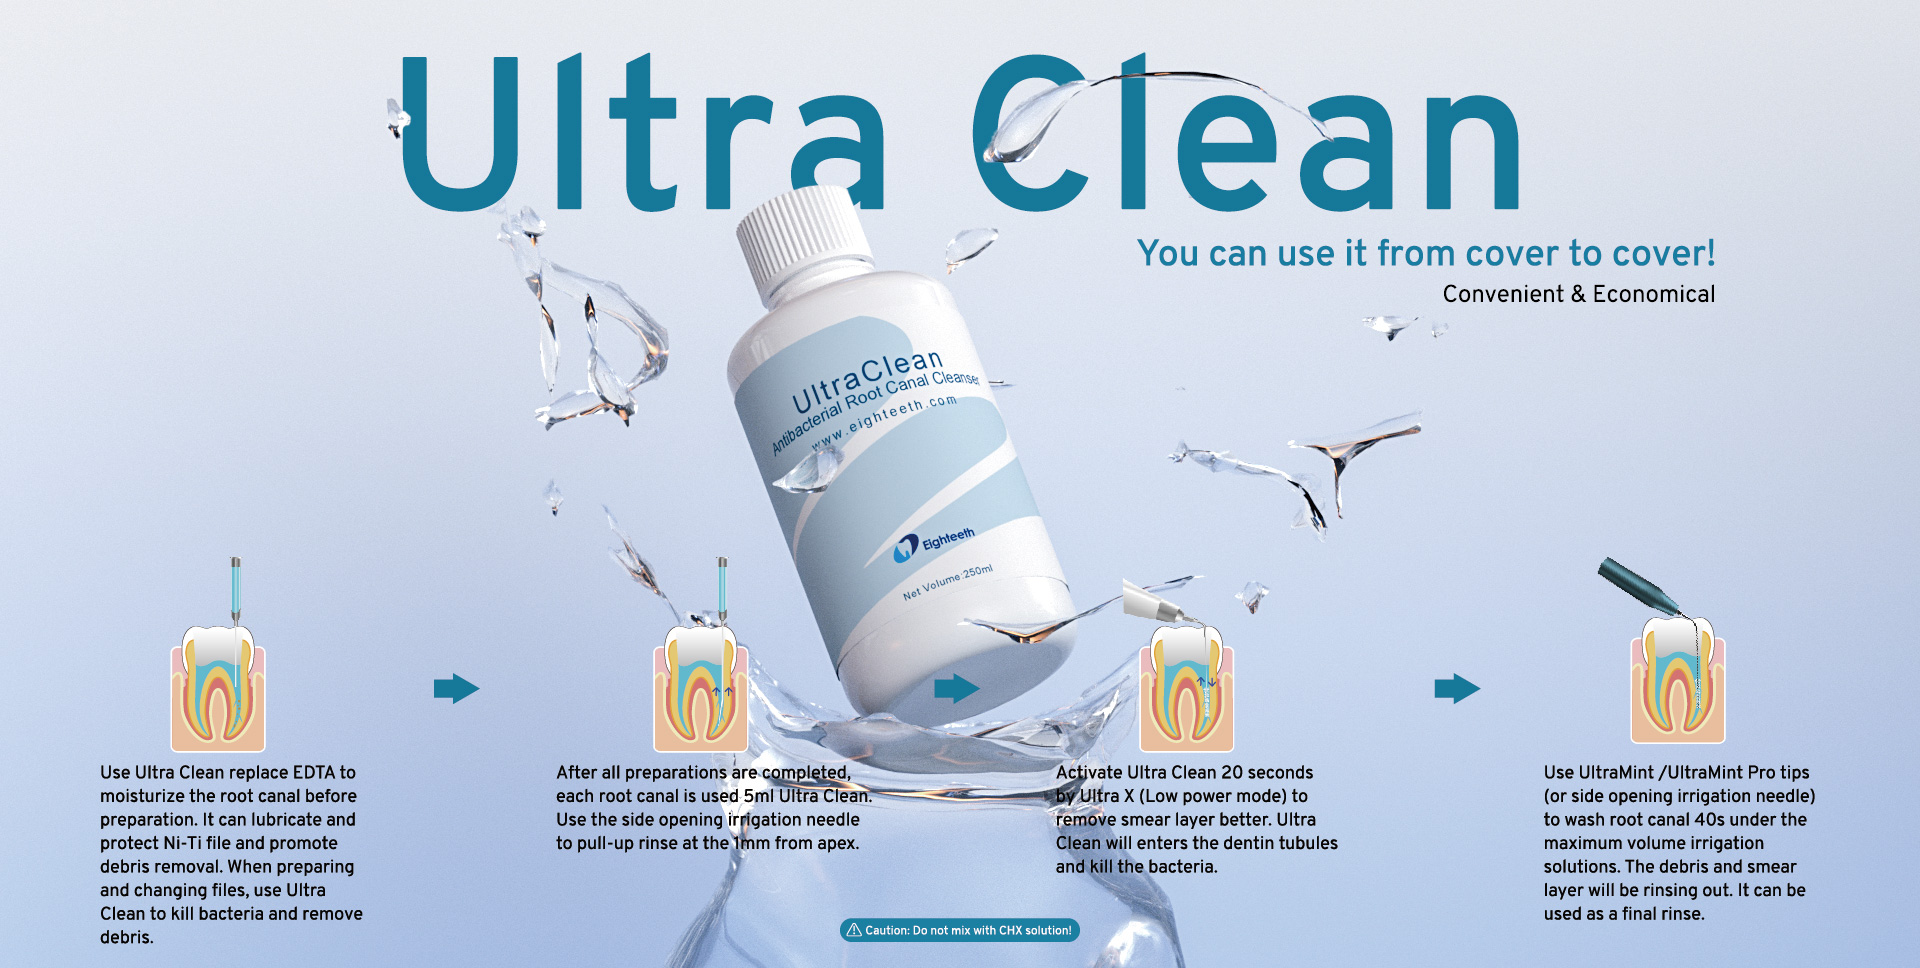 Ultra Clean